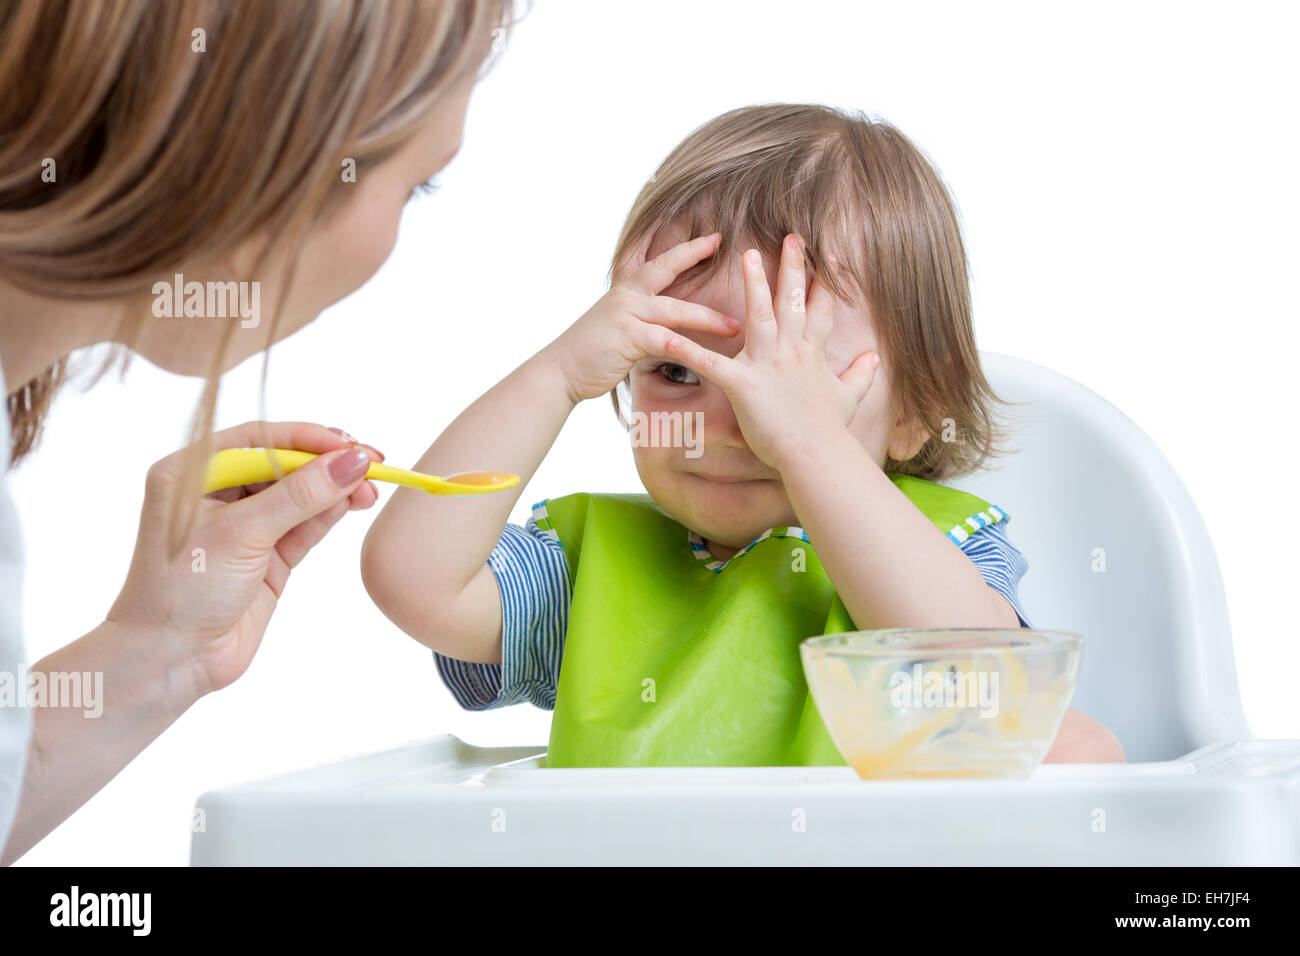 Niño niño se niega a comer con las manos cara de cierre Foto de stock